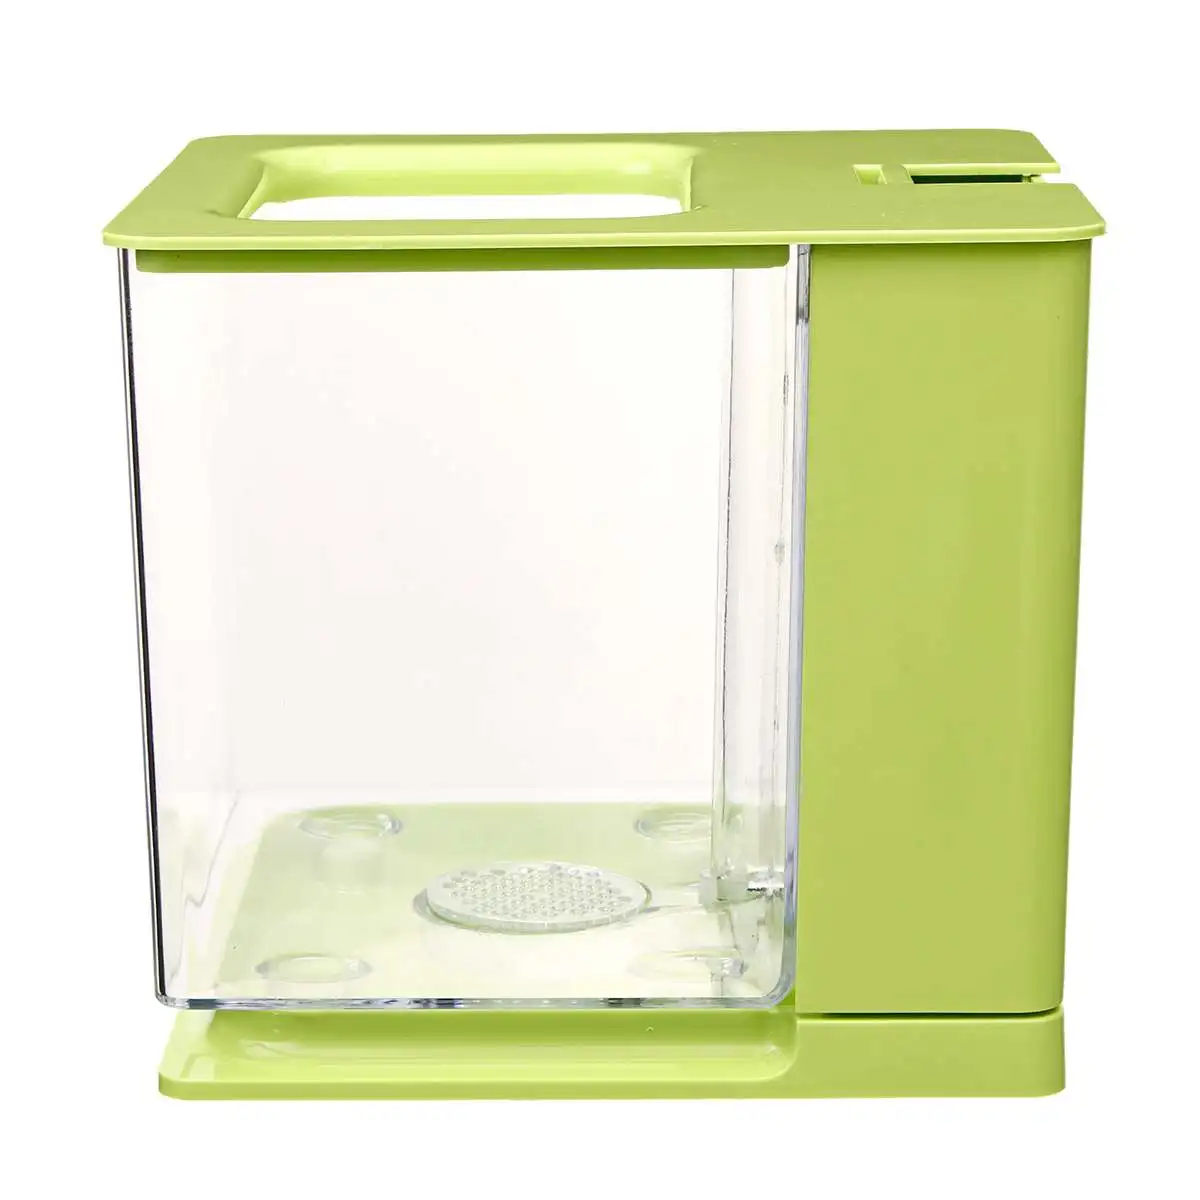 4 цвета аквариум для рыб маленькая акриловая прозрачная коробка для разведения мини настольный домашний офис украшение аквариума самоочищающийся аквариум